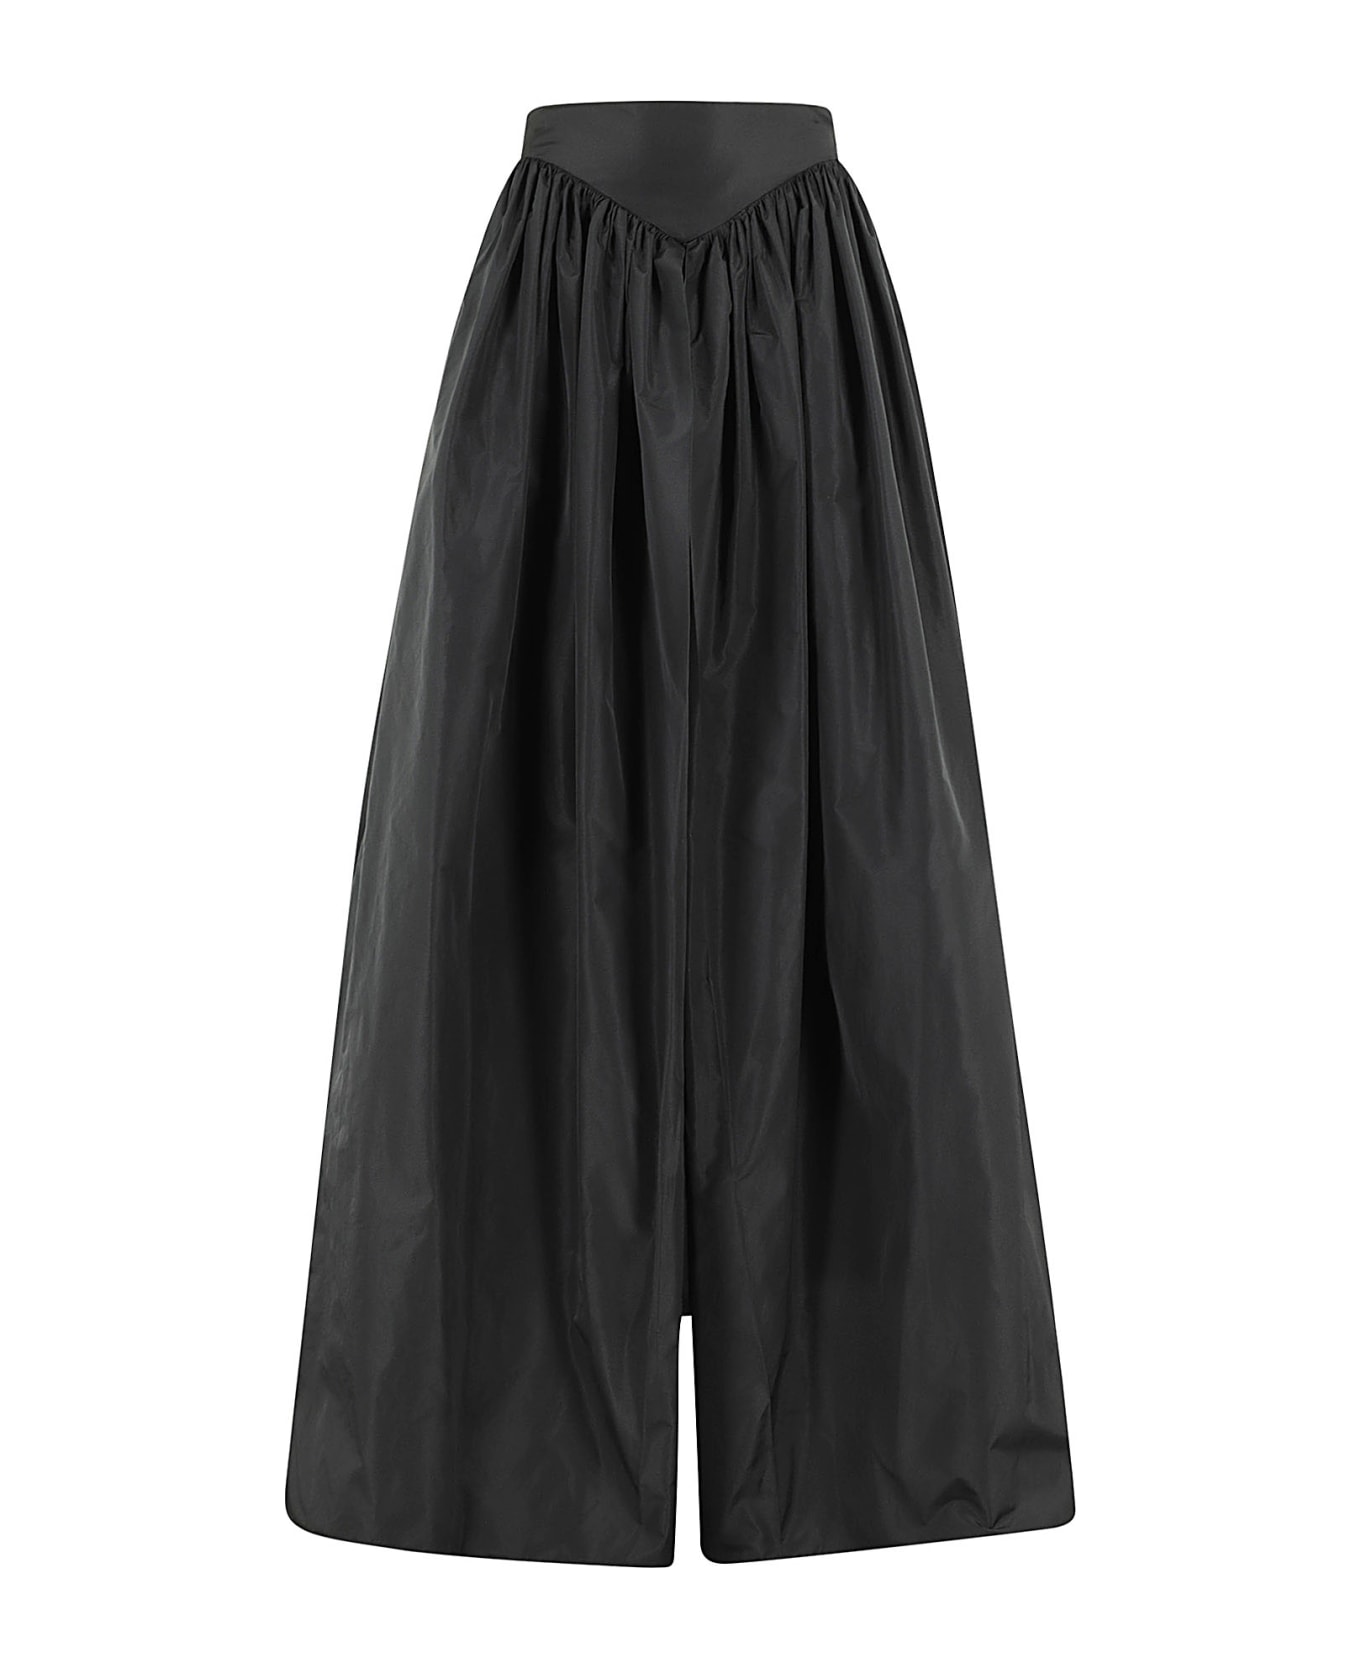 Pinko Botticino Skirt - Black スカート